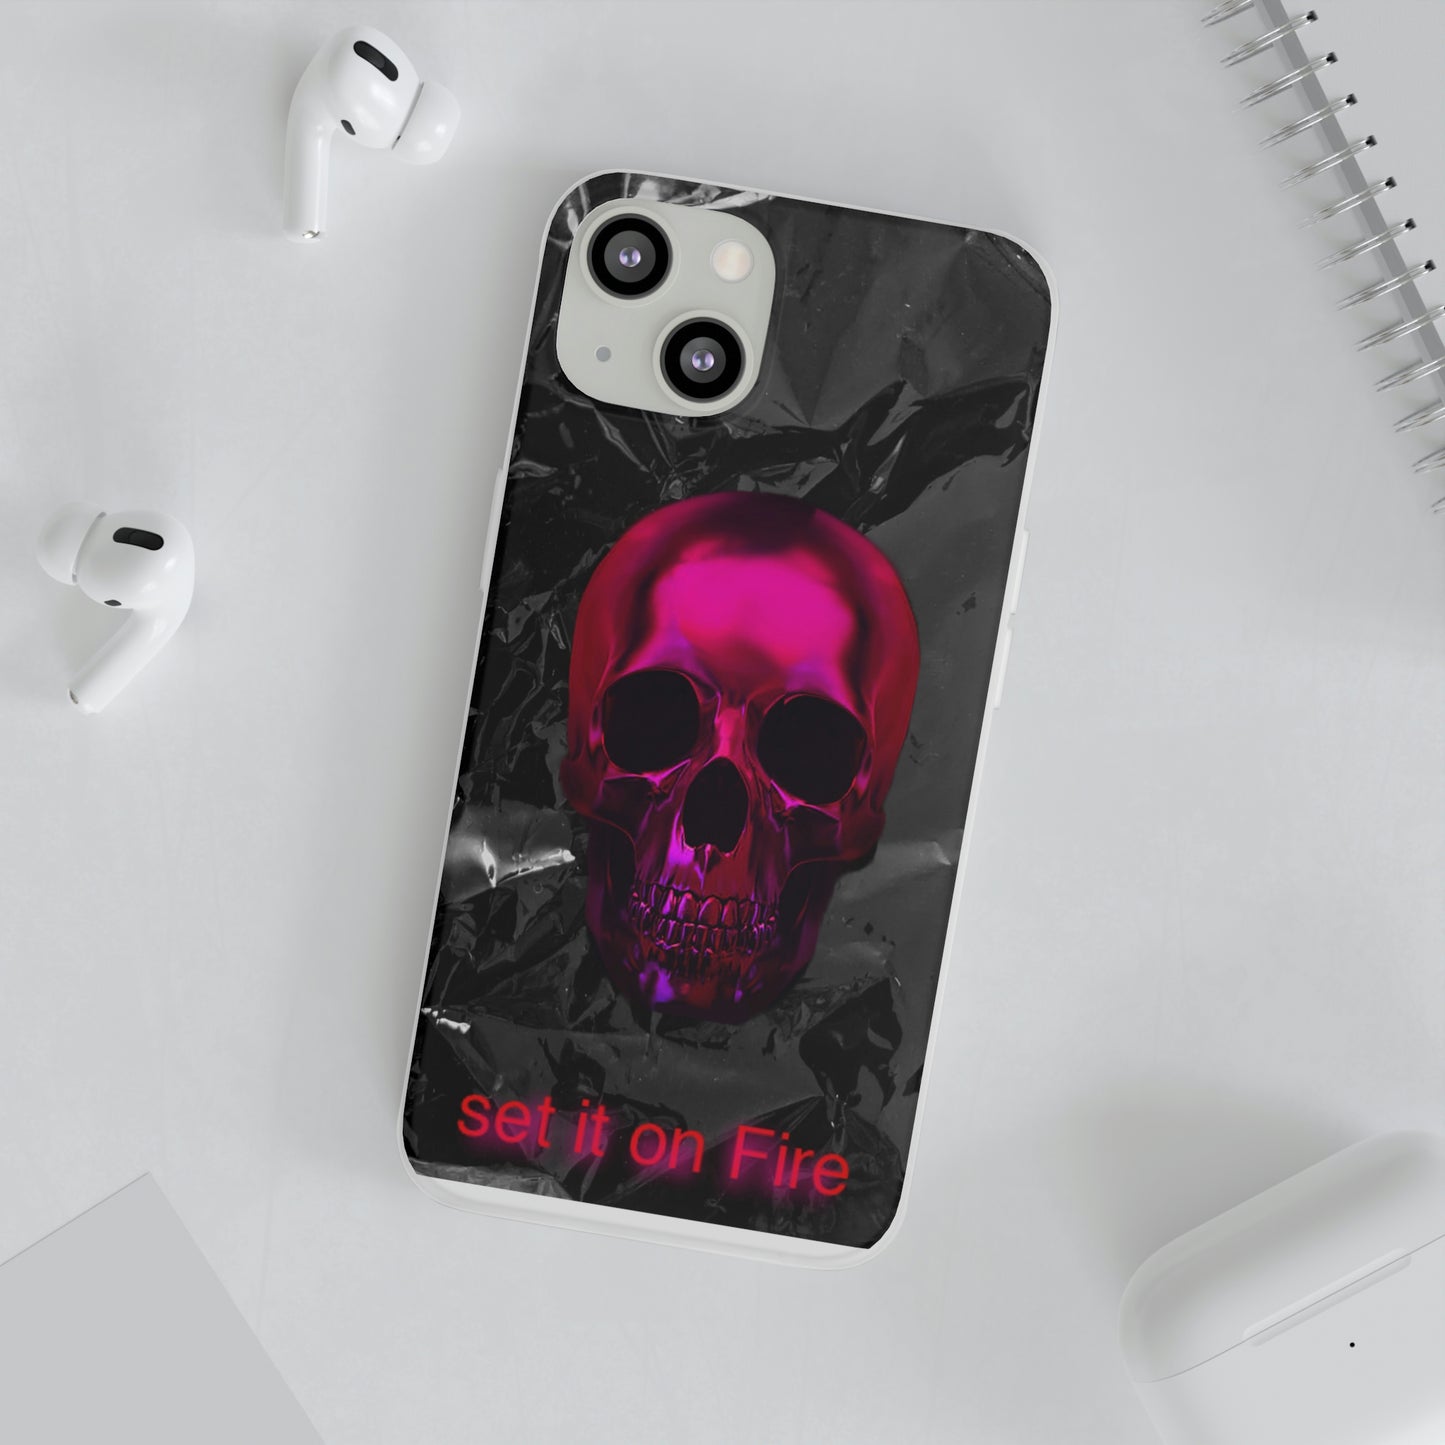 Fire Skull Phone Case